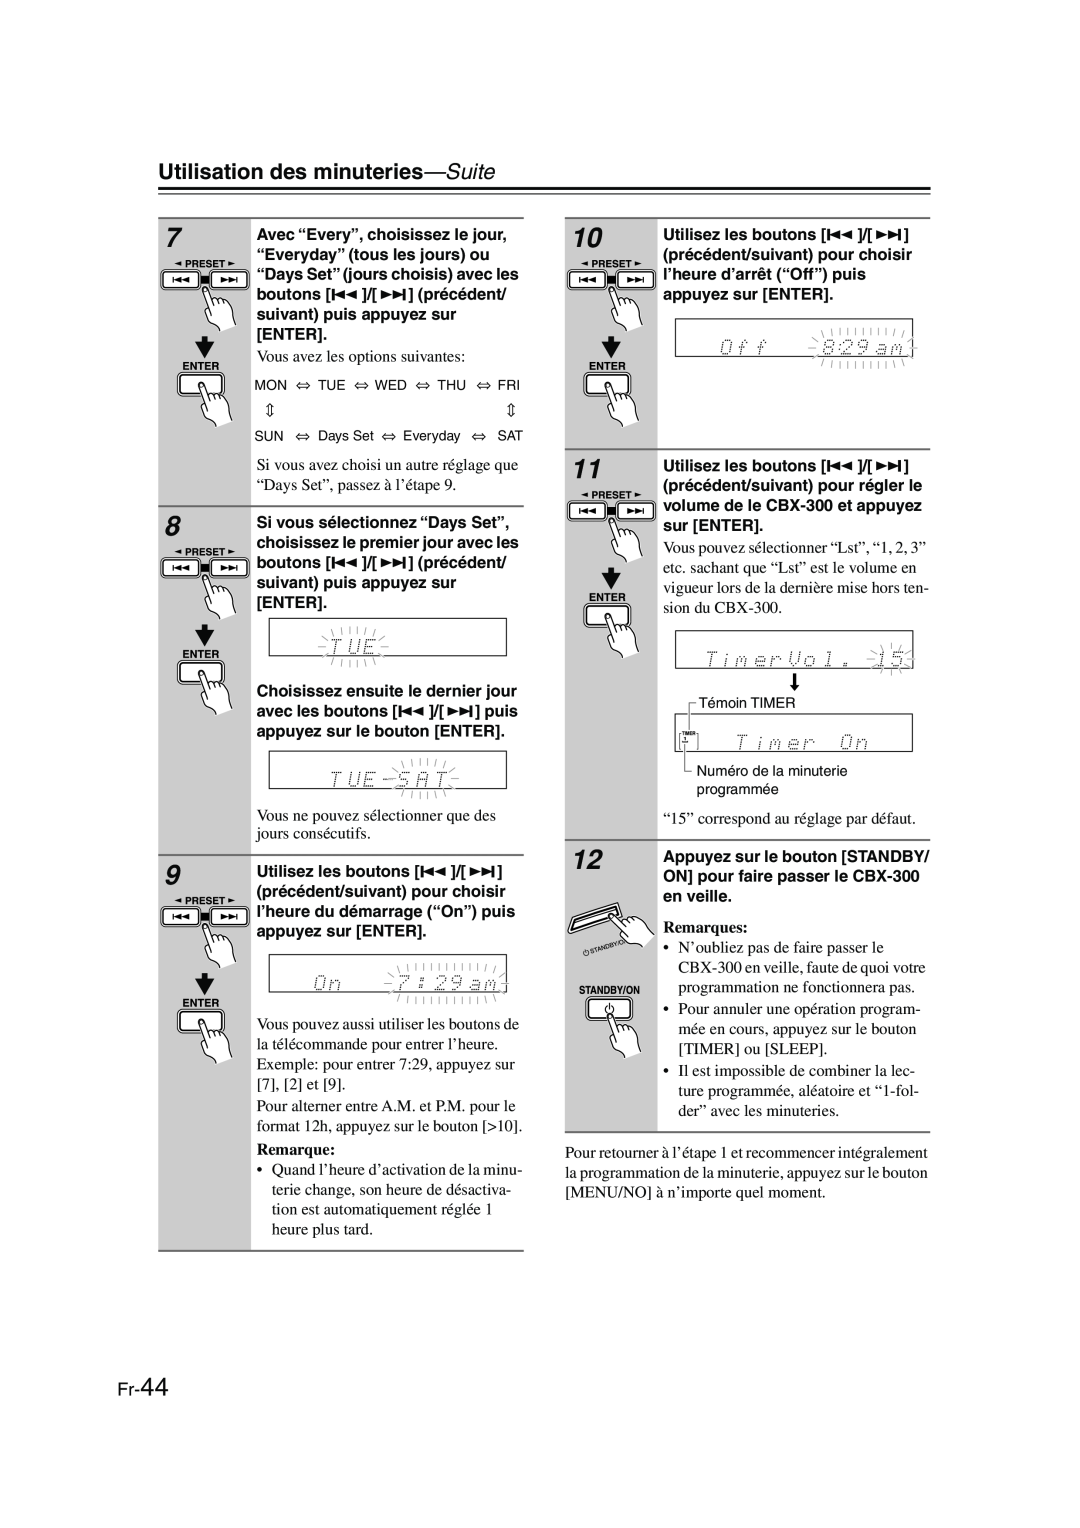 Onkyo CBX-300 instruction manual 7 8 9, Fr-44, Utilisation des minuteries—Suite, Remarques 